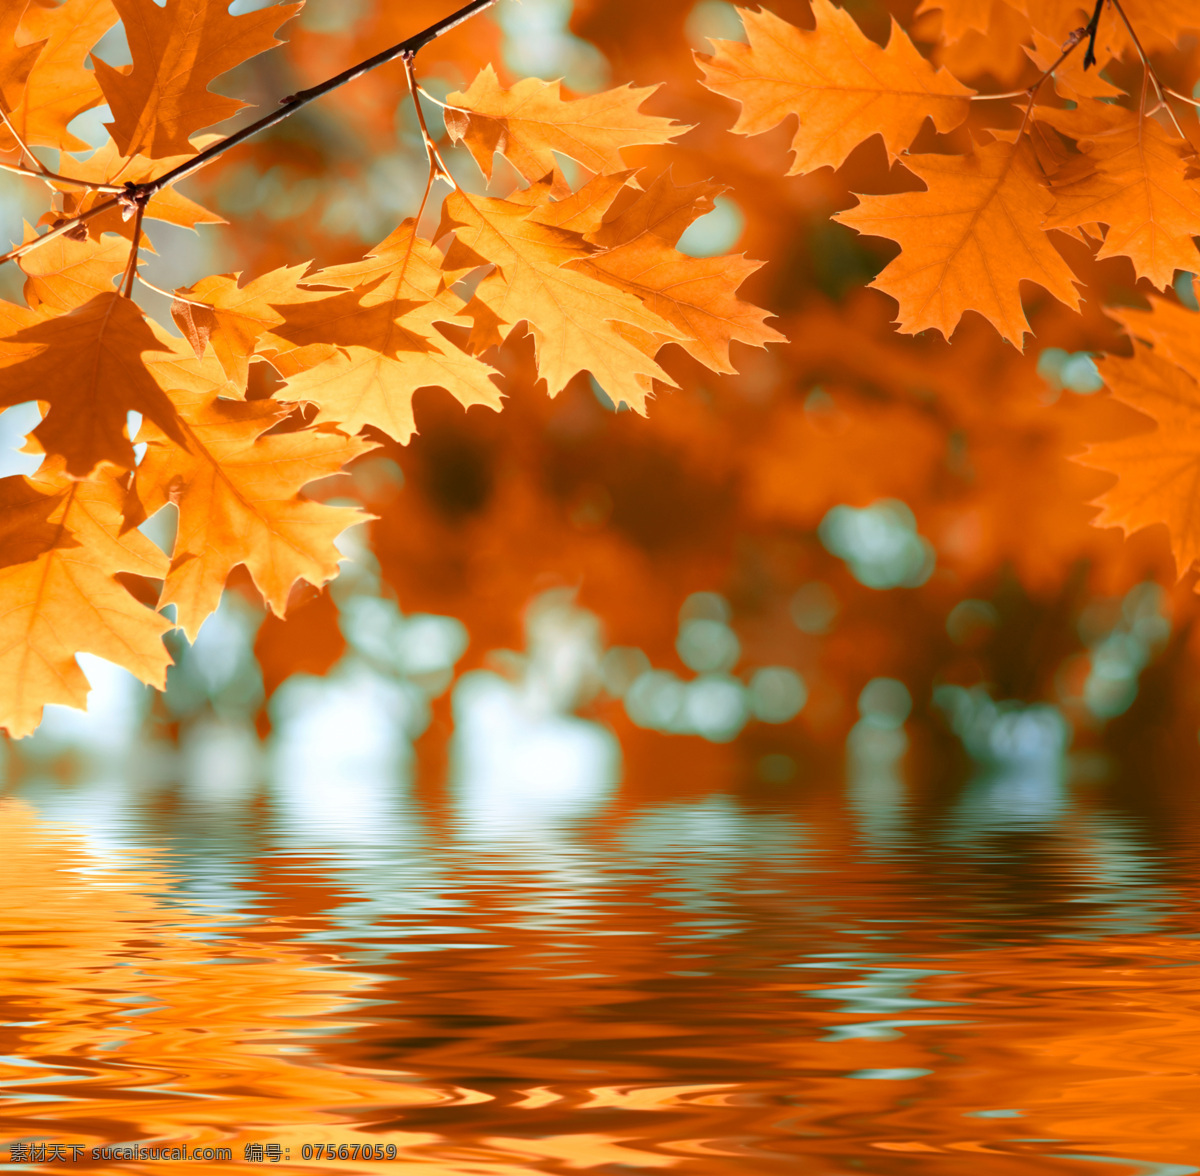 秋天的树叶 枫叶 叶子 黄叶 倒影 水面 自然风景 自然景观 橙色